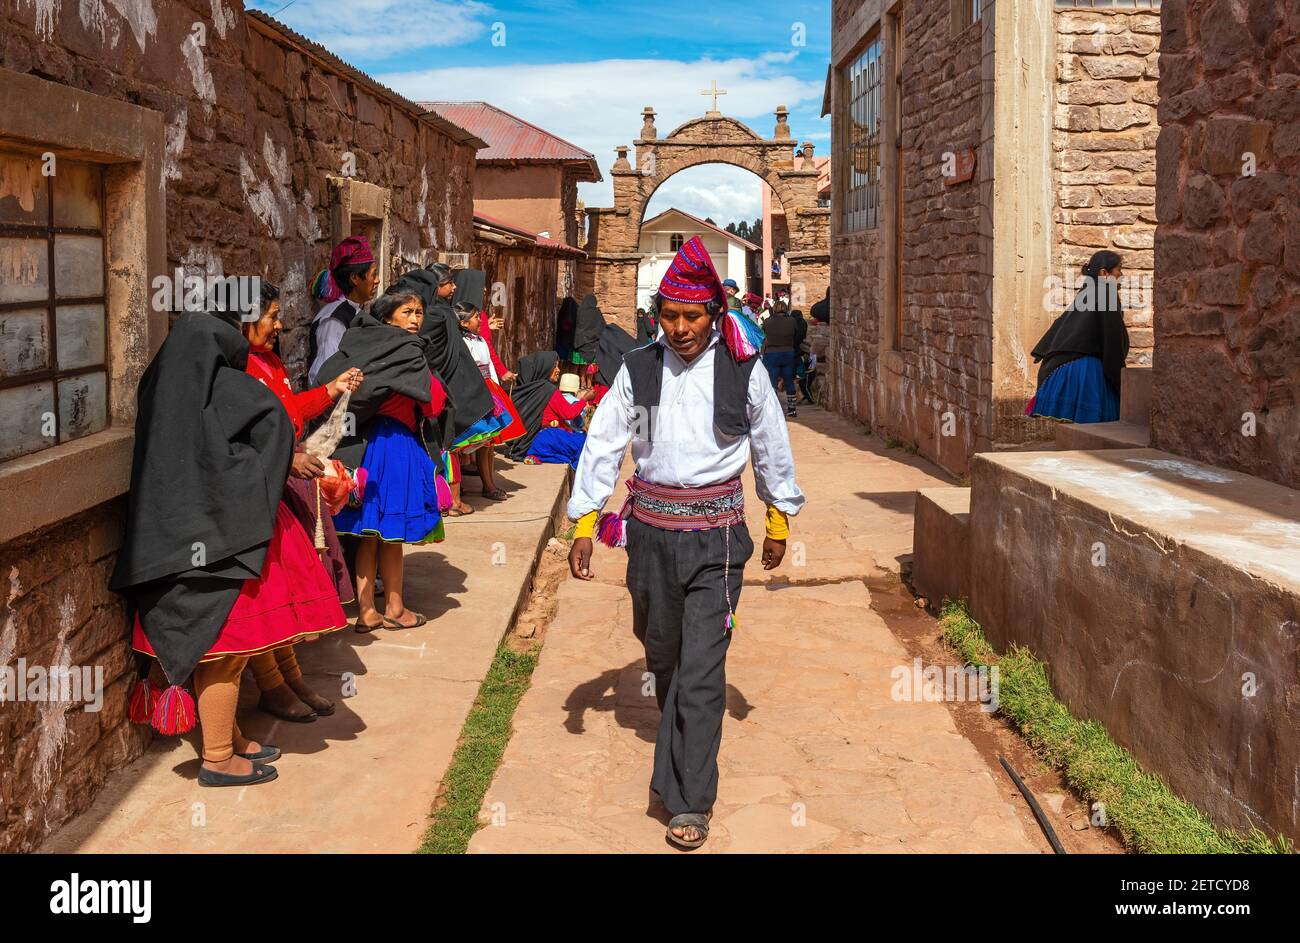 Indigene peruanische Quechua Menschen in traditioneller Kleidung in einer Straße der Insel Taquile, Titicaca-See, Peru. Stockfoto